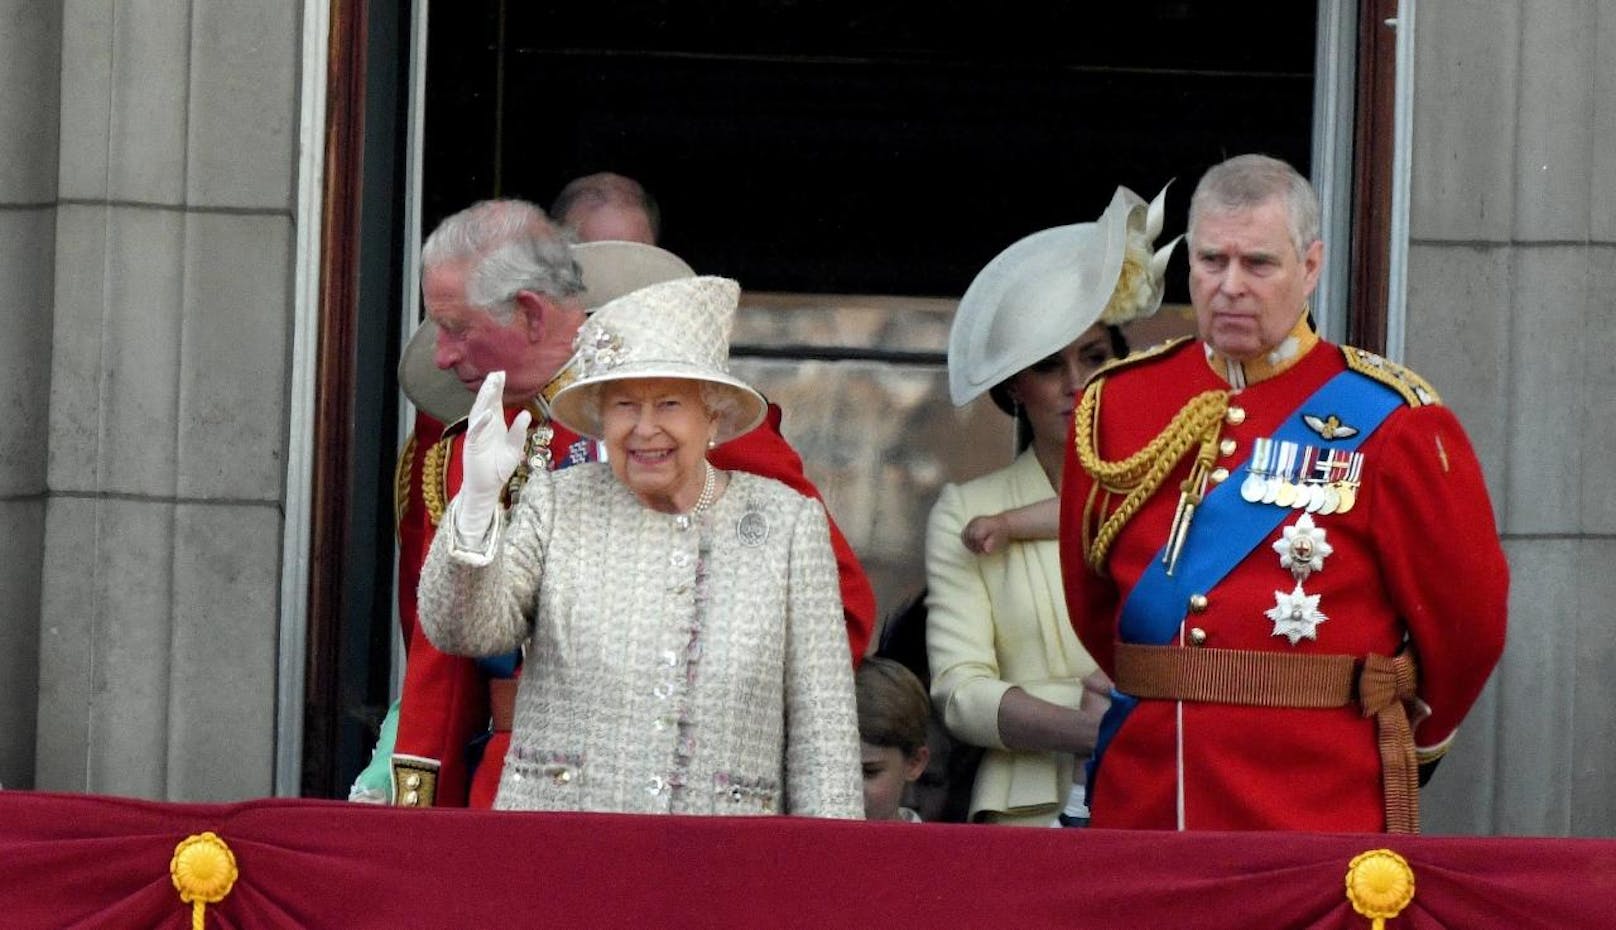 Prince Andrew legte am 20.11.2019 nach einem desaströsen Interview alle seine Ämter zurück. Am 21. kommt heraus: Seine Mama, die Queen hat ihn persönlich gefeuert. Sowas gab's noch nie. <a href="https://www.heute.at/s/prinz-andrew-queen-roylas-kundigung-rauswurf-48313950">Alle Infos HIER</a>